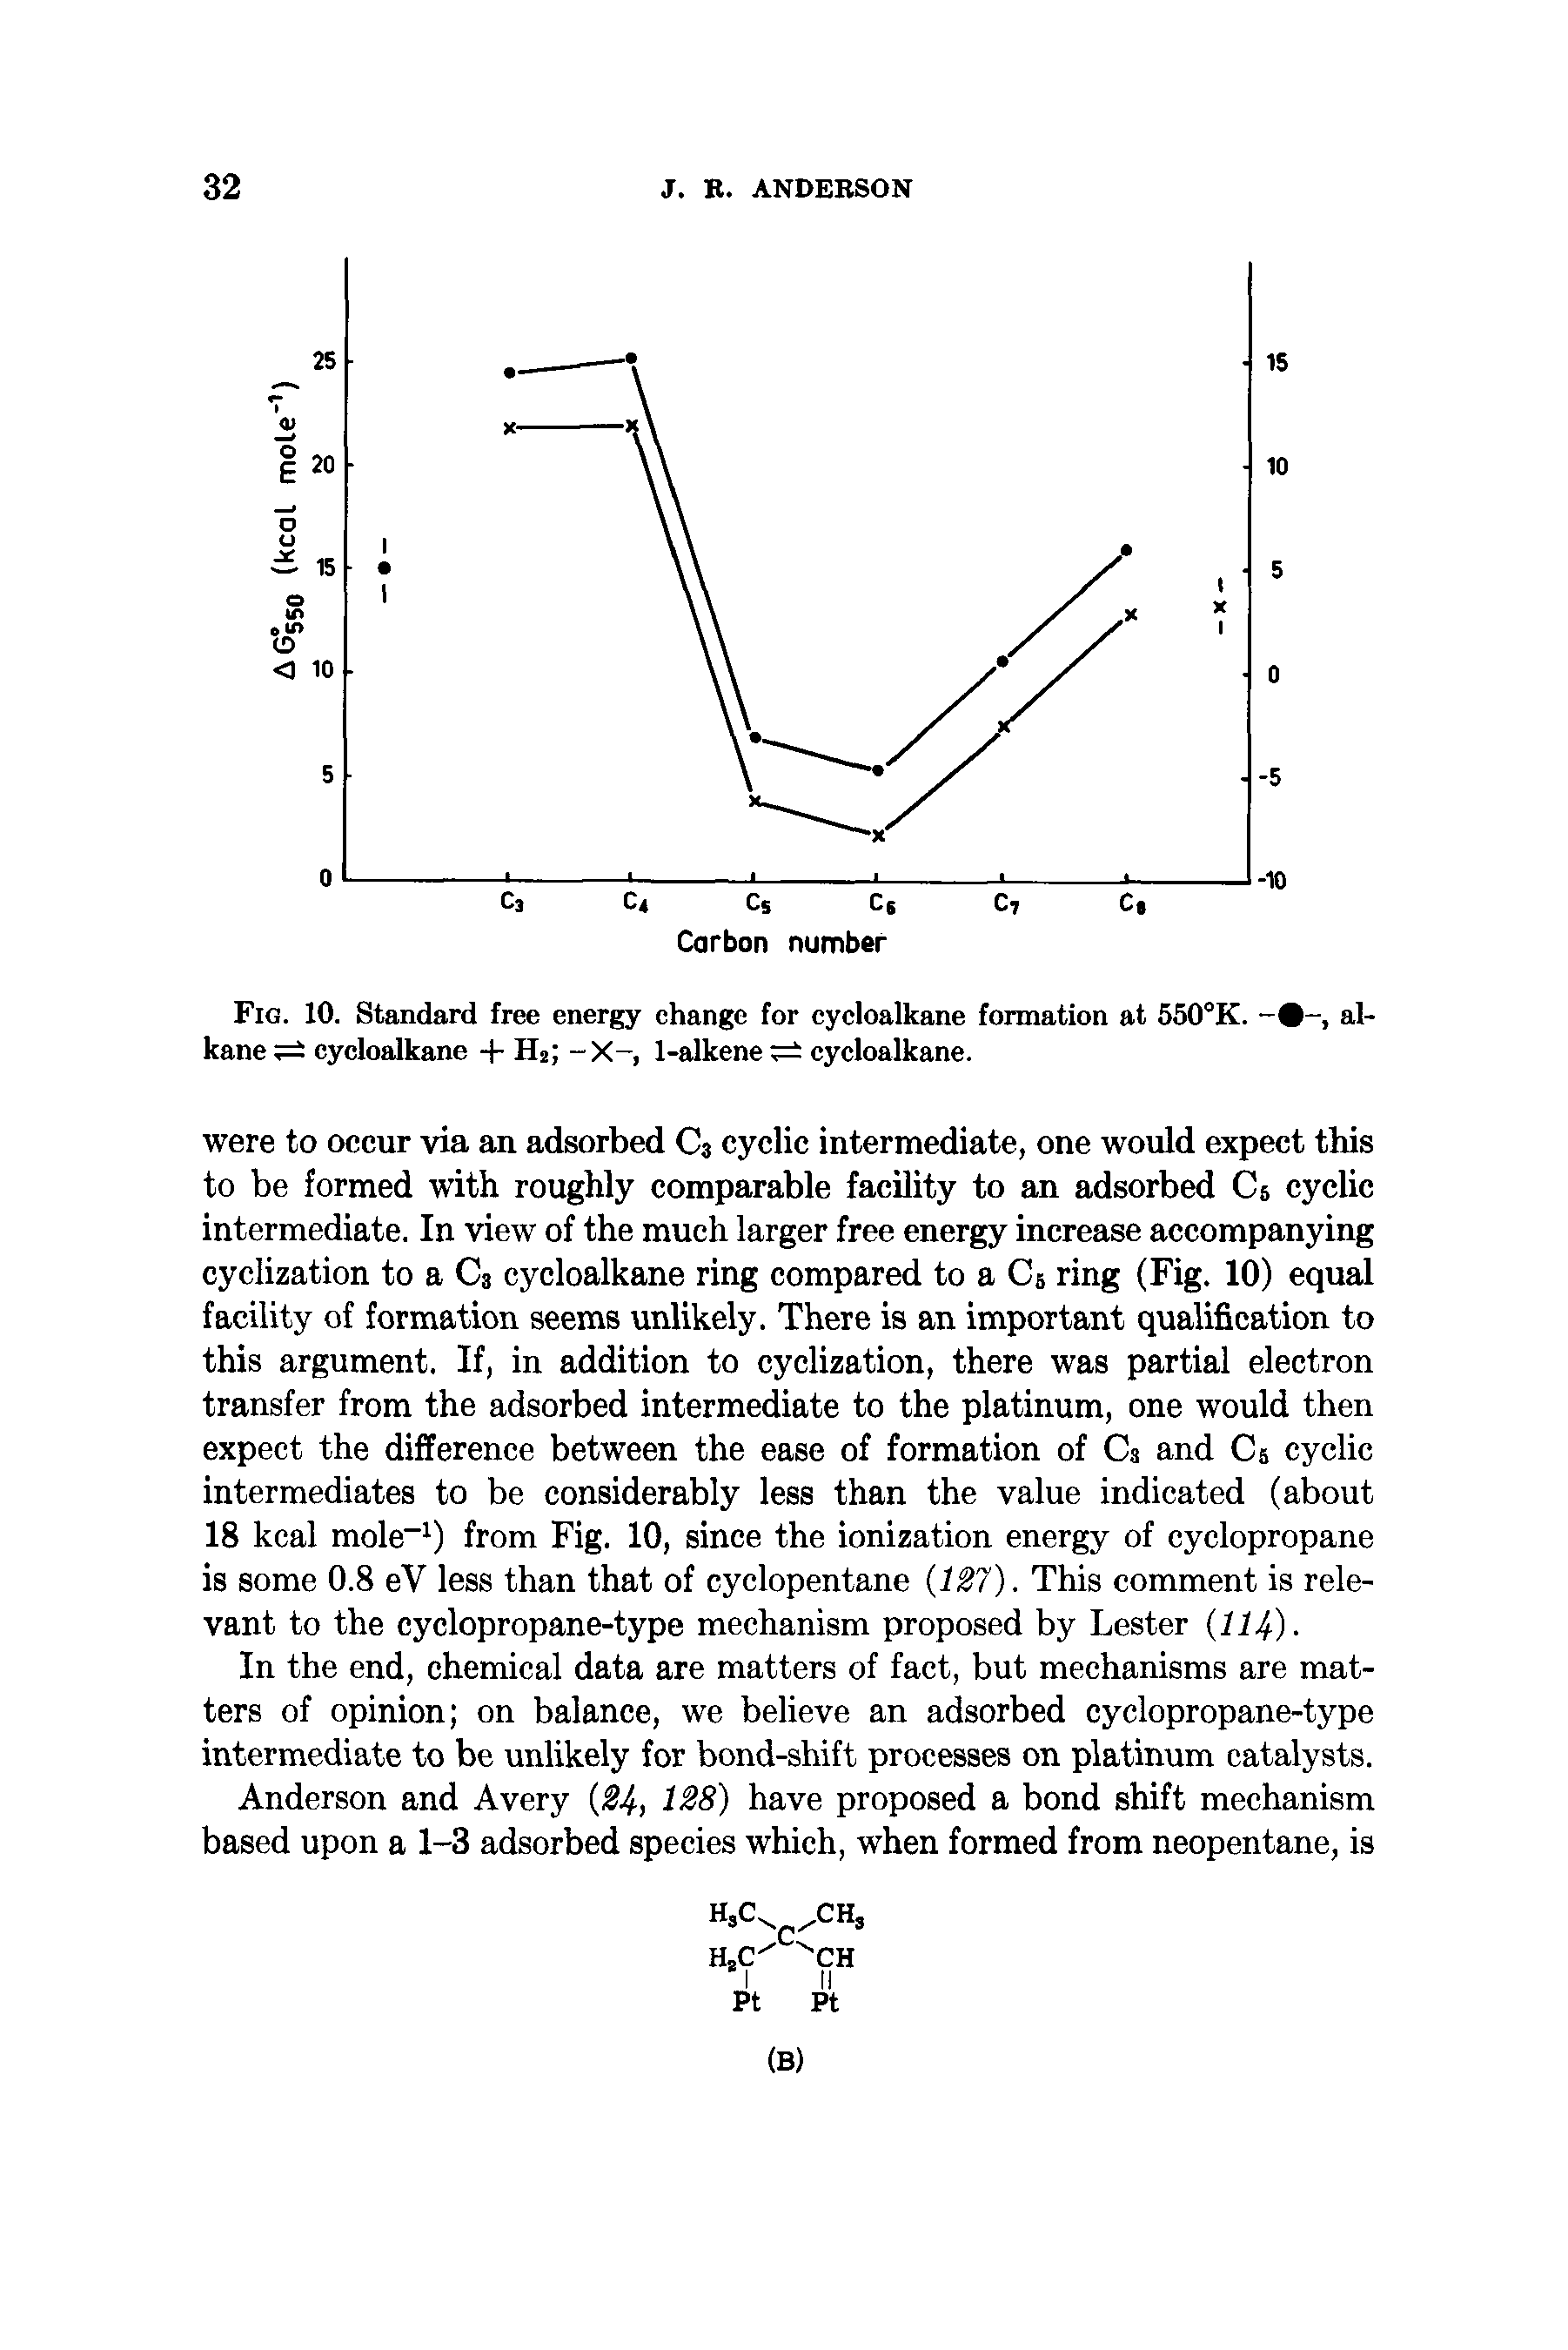 Fig. 10. Standard free energy change for cycloalkane formation at 550°K. alkane cycloalkane + H2 -X-, 1-alkene cycloalkane.